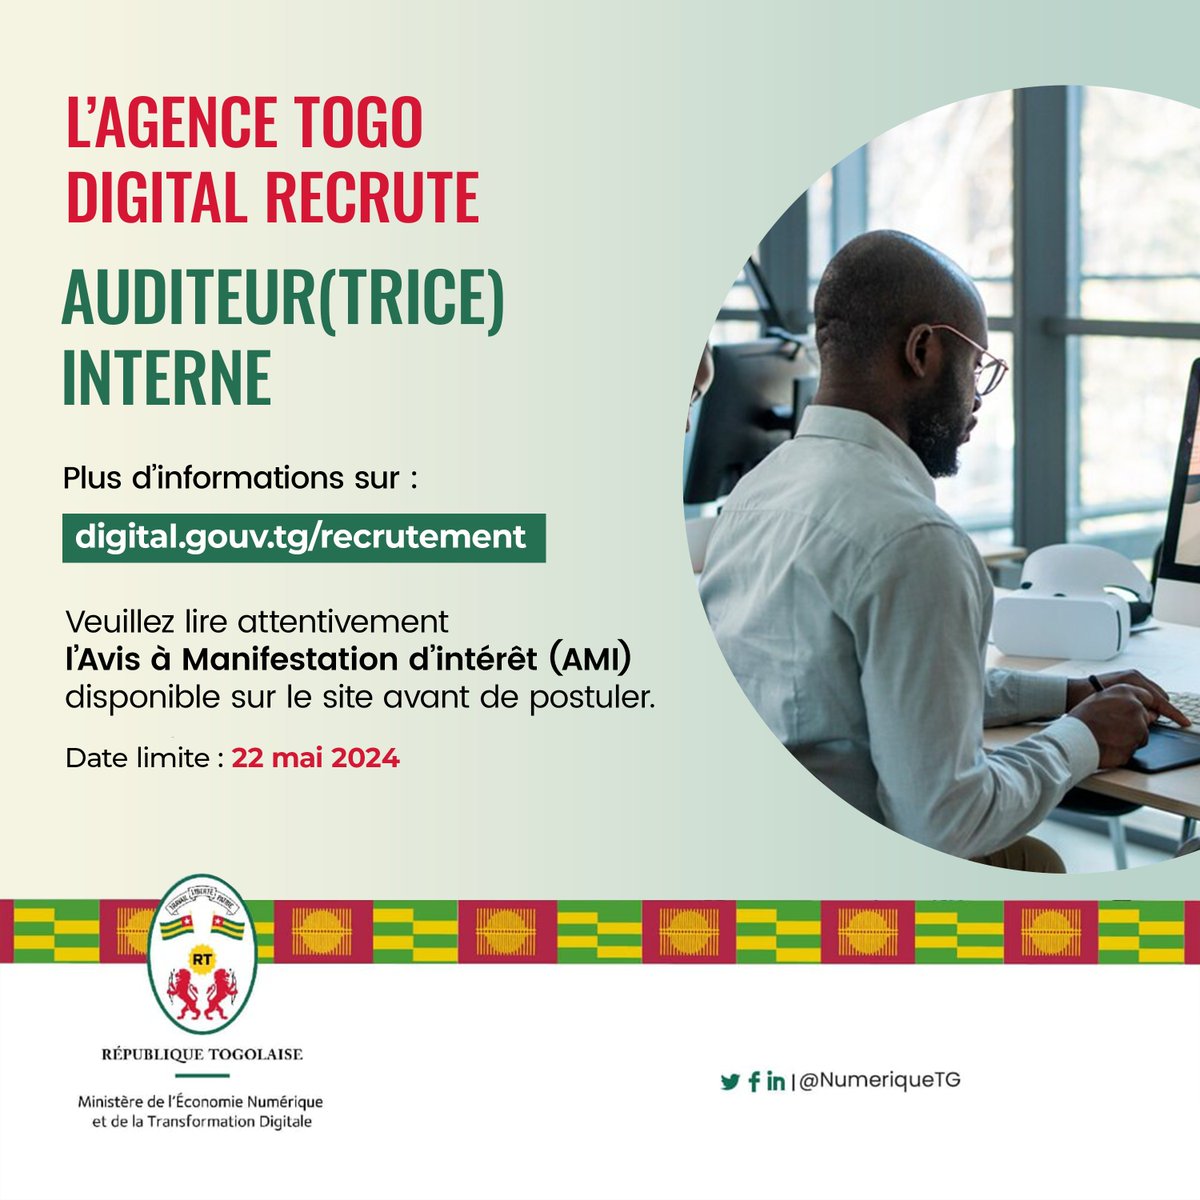 L'Agence Togo Digital recrute un(e) Auditeur(trice) interne Vous avez une excellente maîtrise des normes et méthodes d’audit interne, une solide culture comptable et une connaissance approfondie des principes de contrôle interne ? Postulez et tentez de rejoindre l'ATD au poste